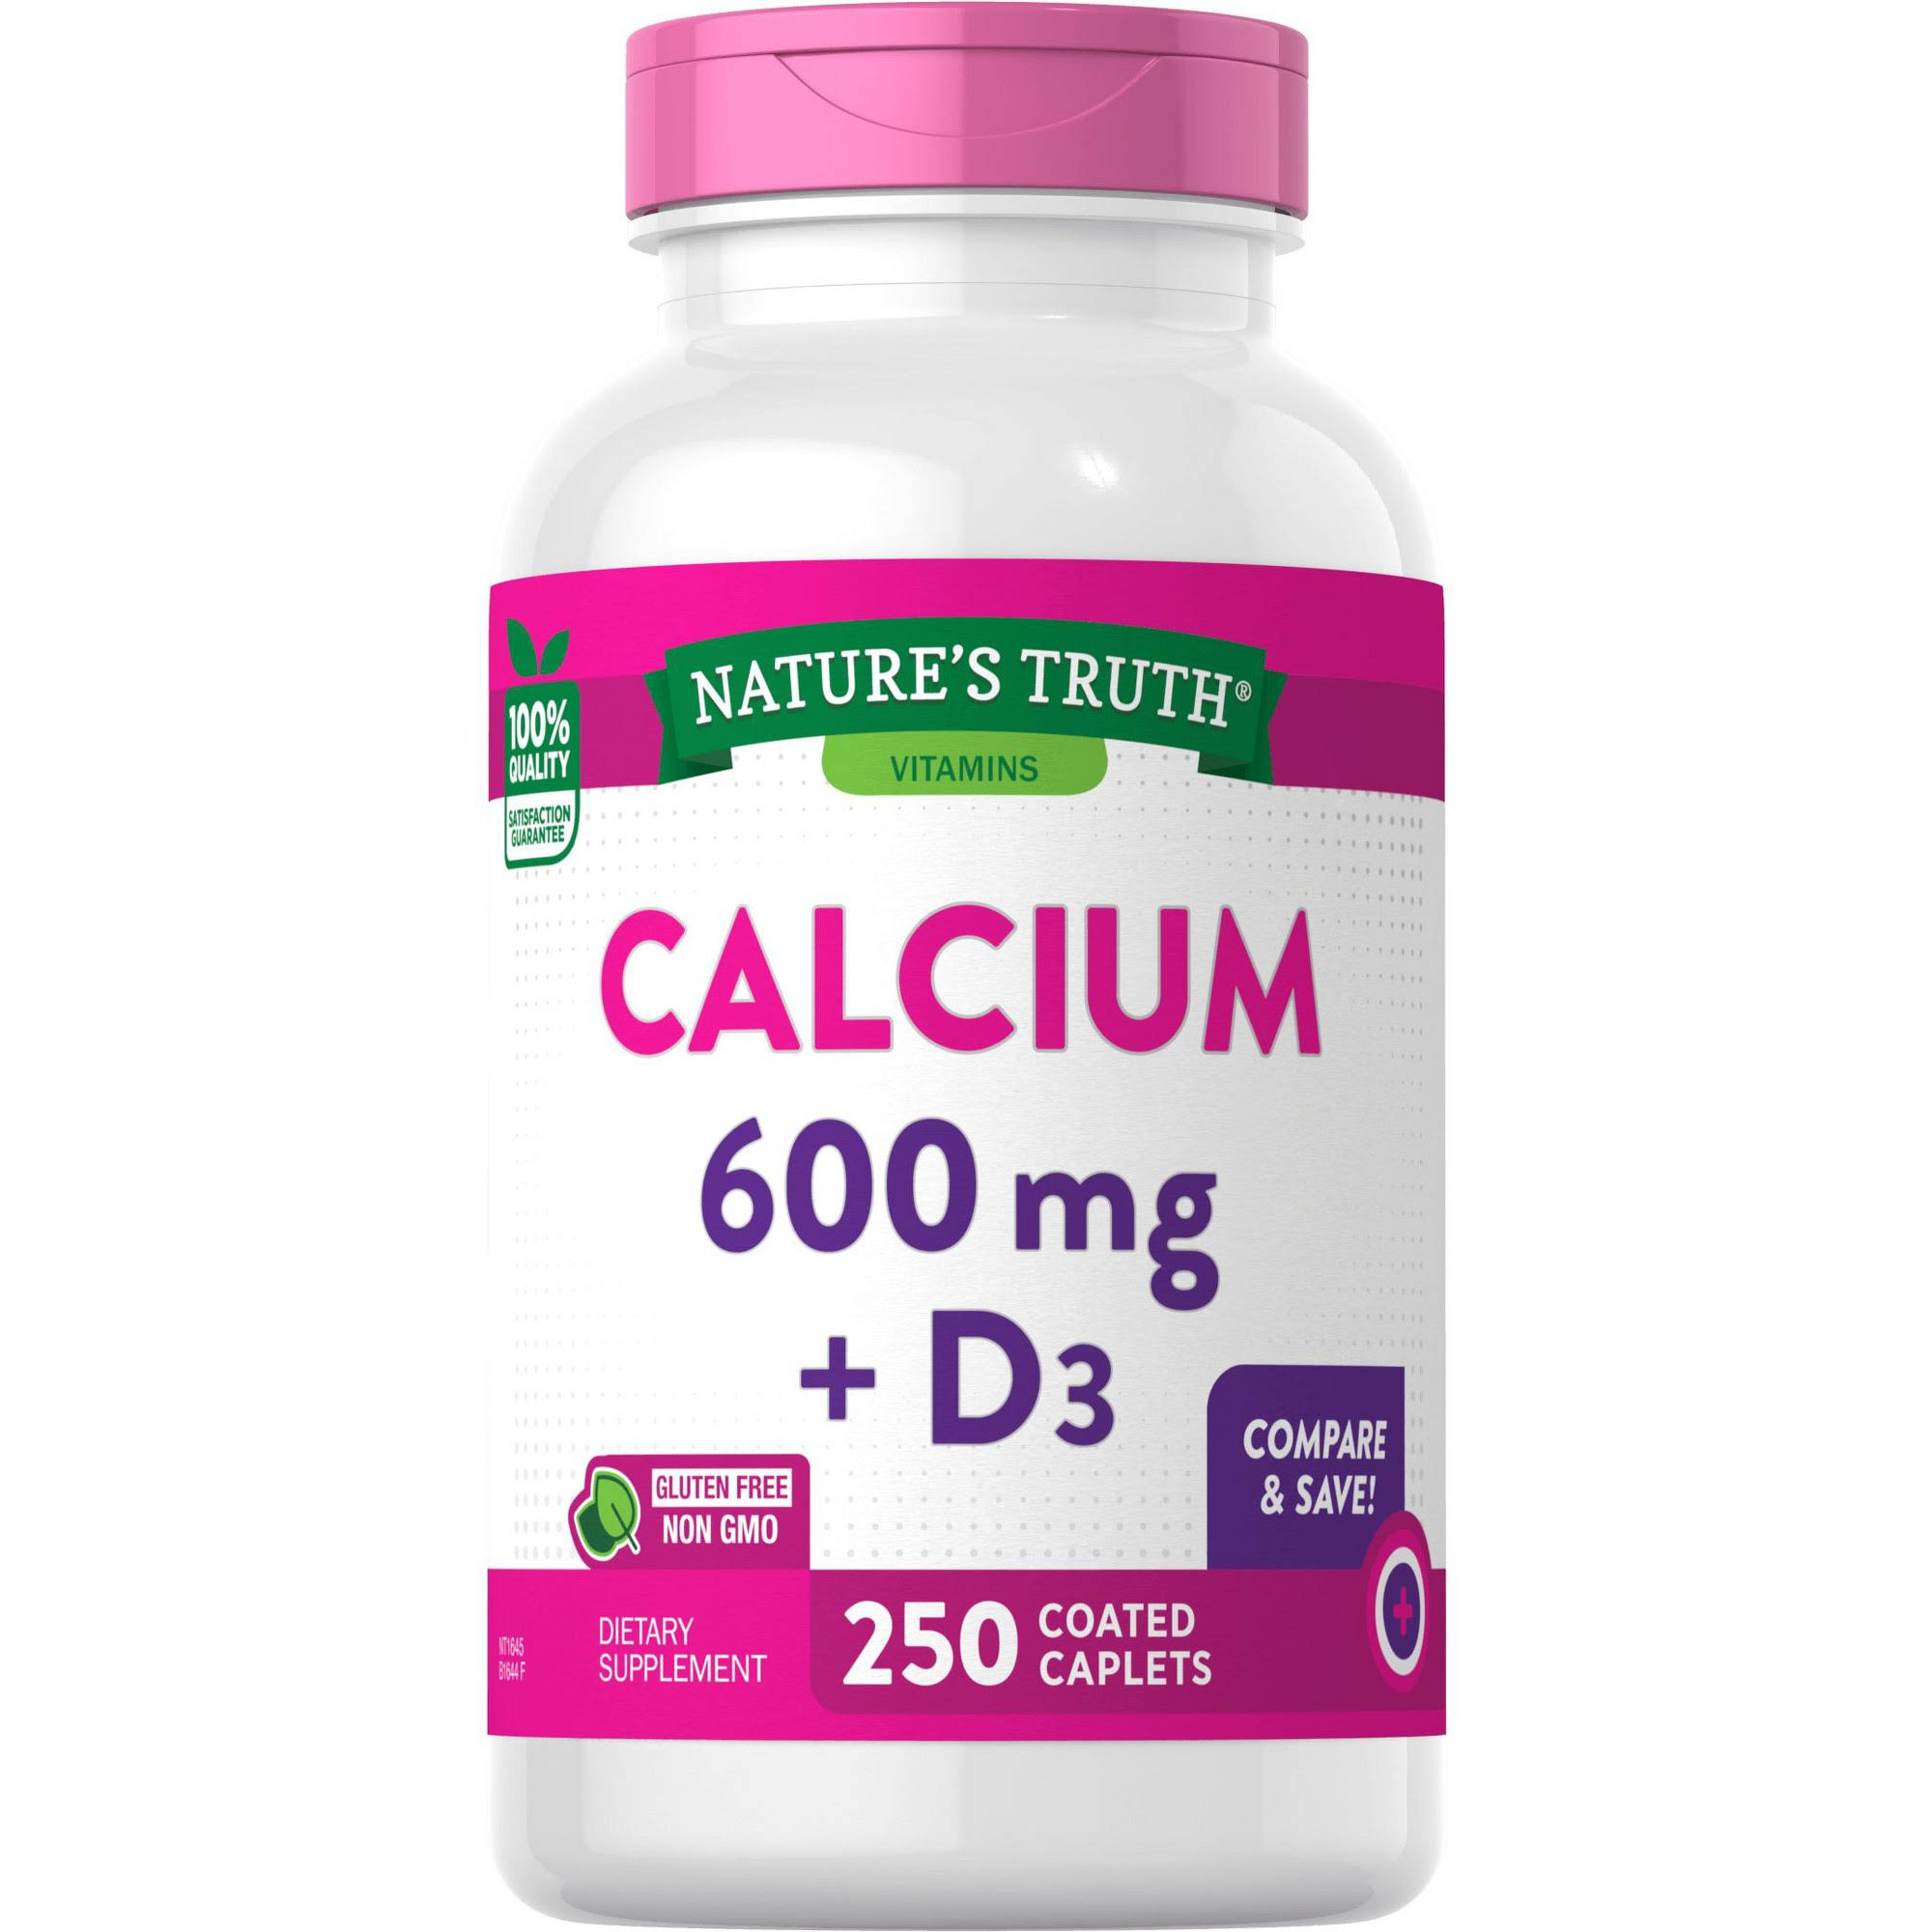 Nature's Truth Calcium Plus Vitamin D3 Tablets - 250ct